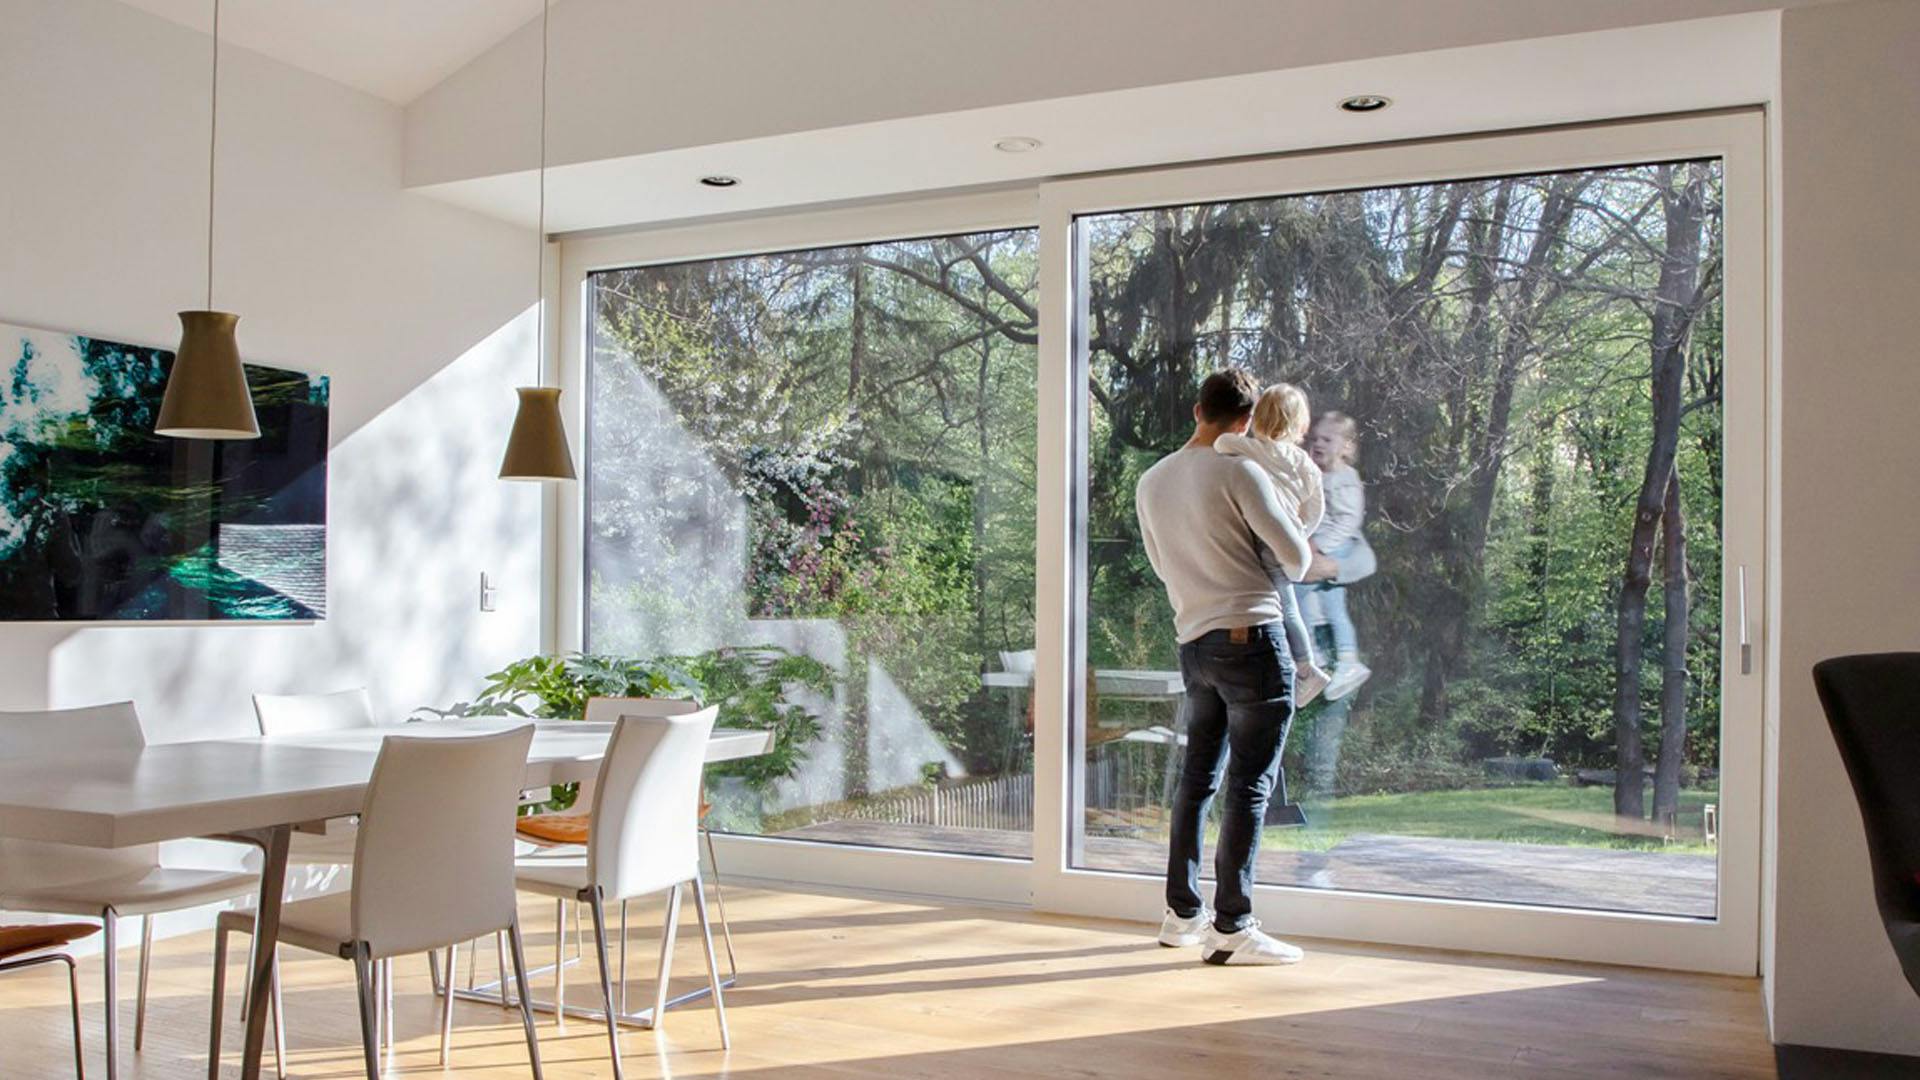 Ventanas y puertas de PVC Kömmerling, diseño y tecnología alemana para tu hogar.